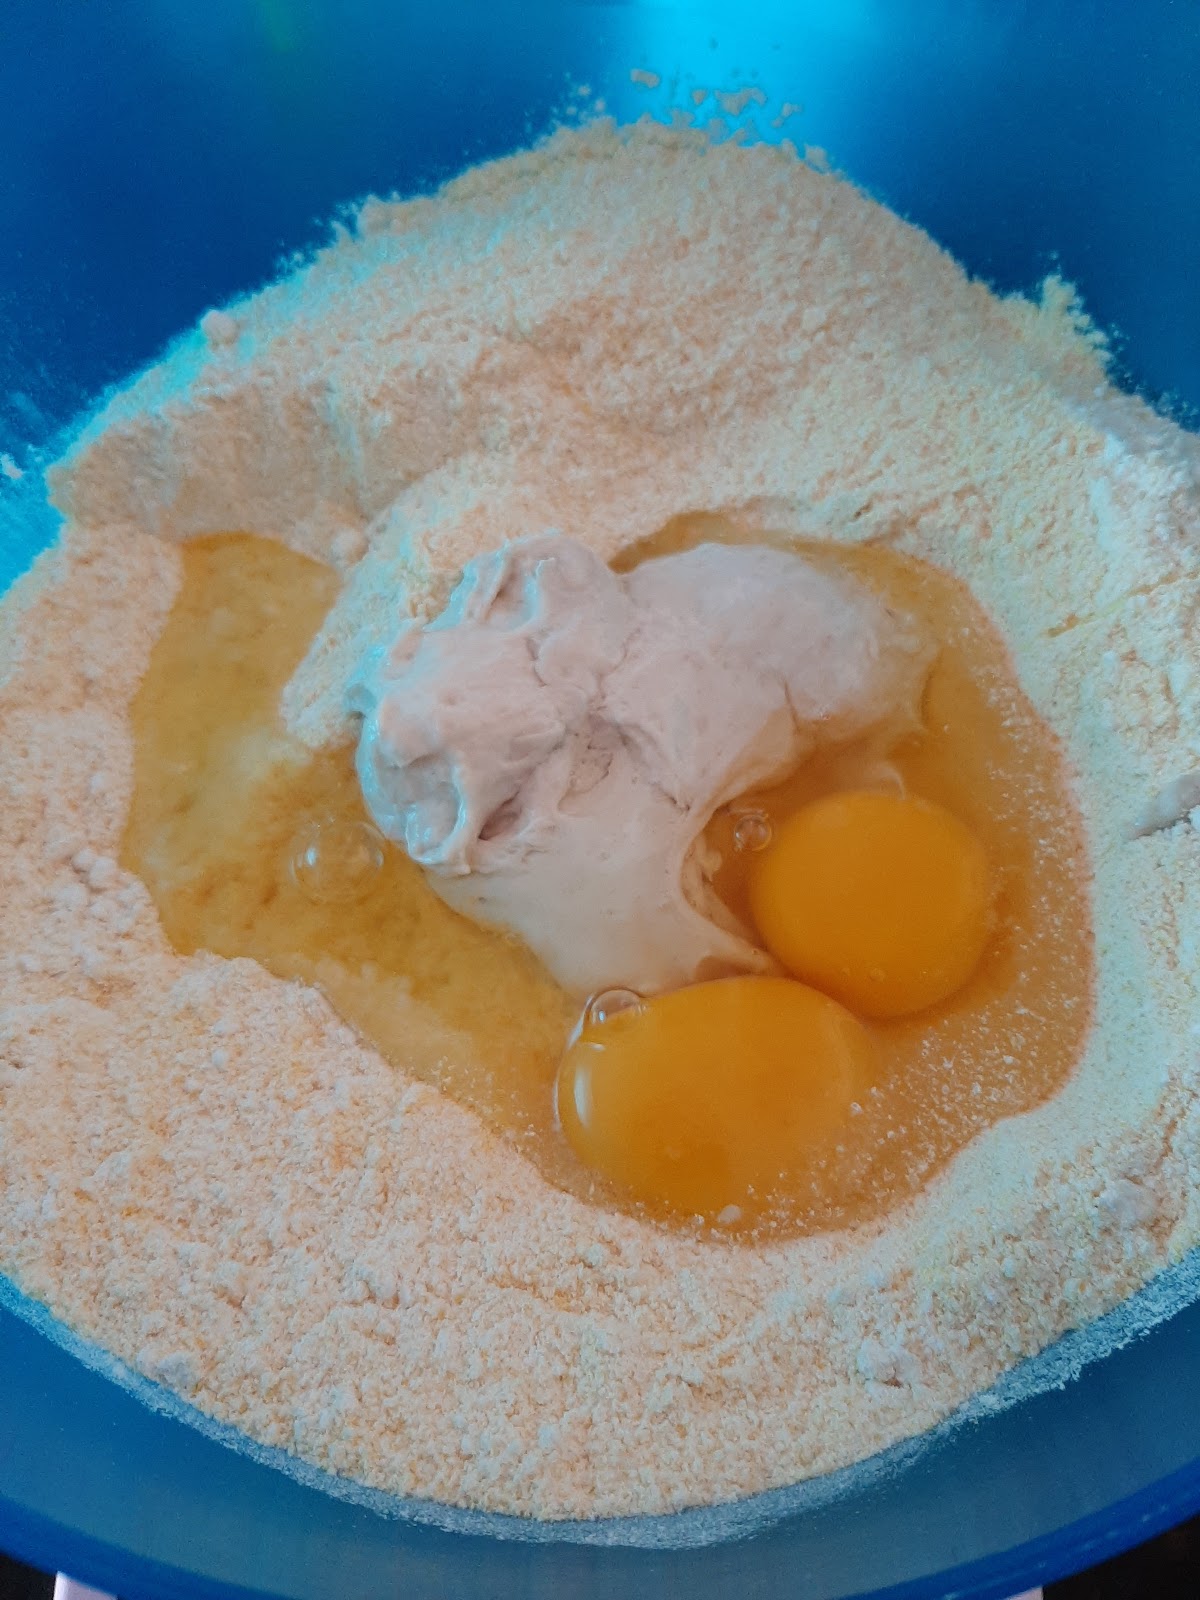 misture a manteiga e ovos na receita de broinha caxambu